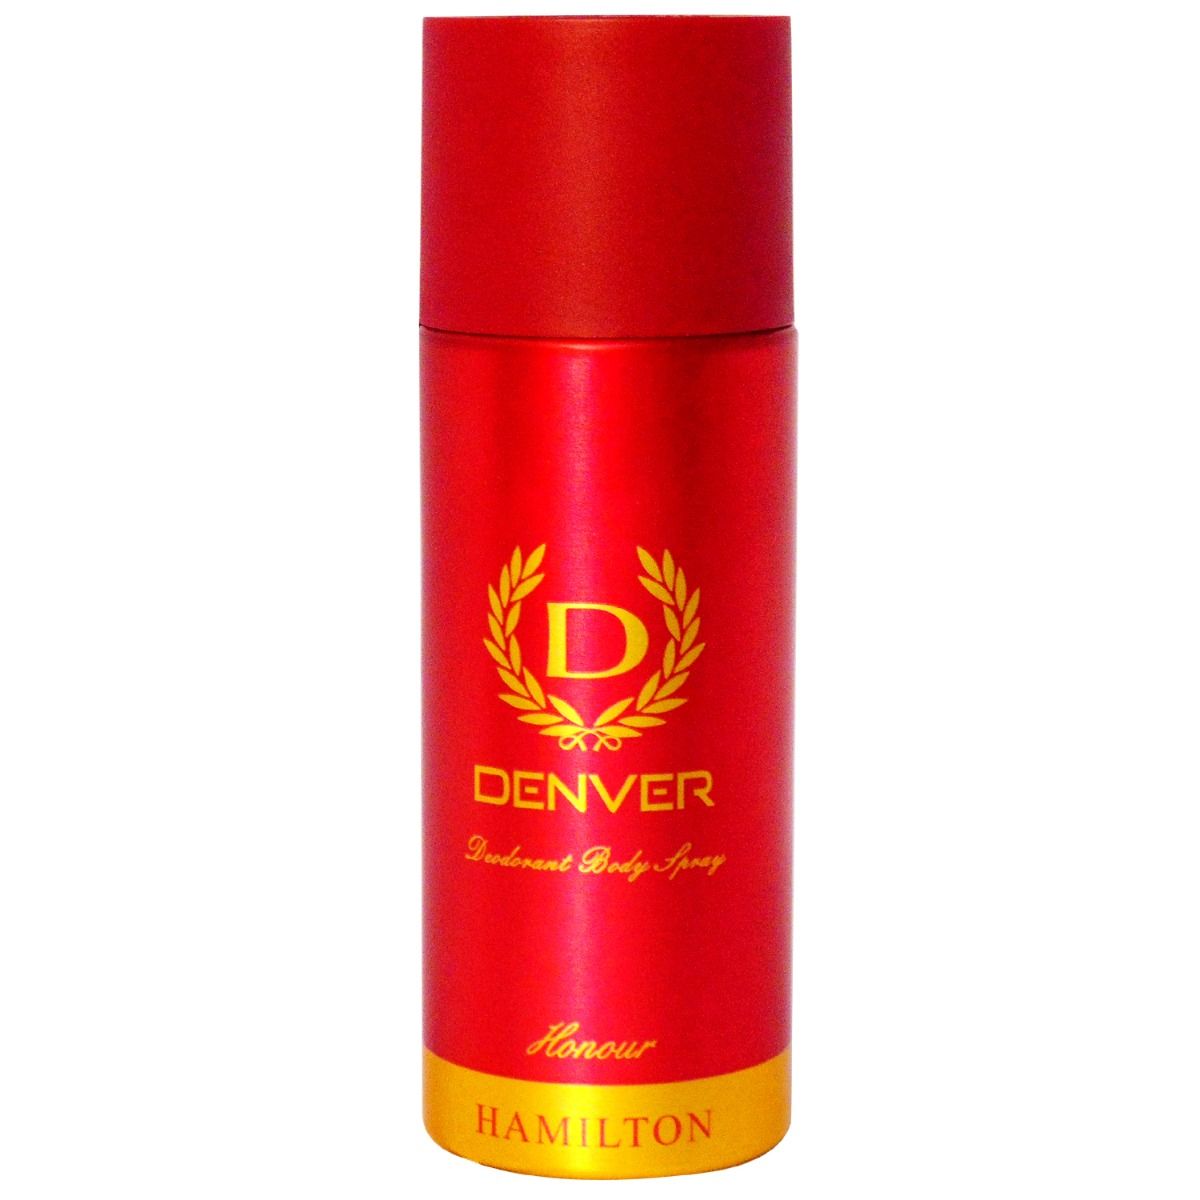 Buy Denver Hamilton Honour Deodrant Body Spray, 165 ml Online